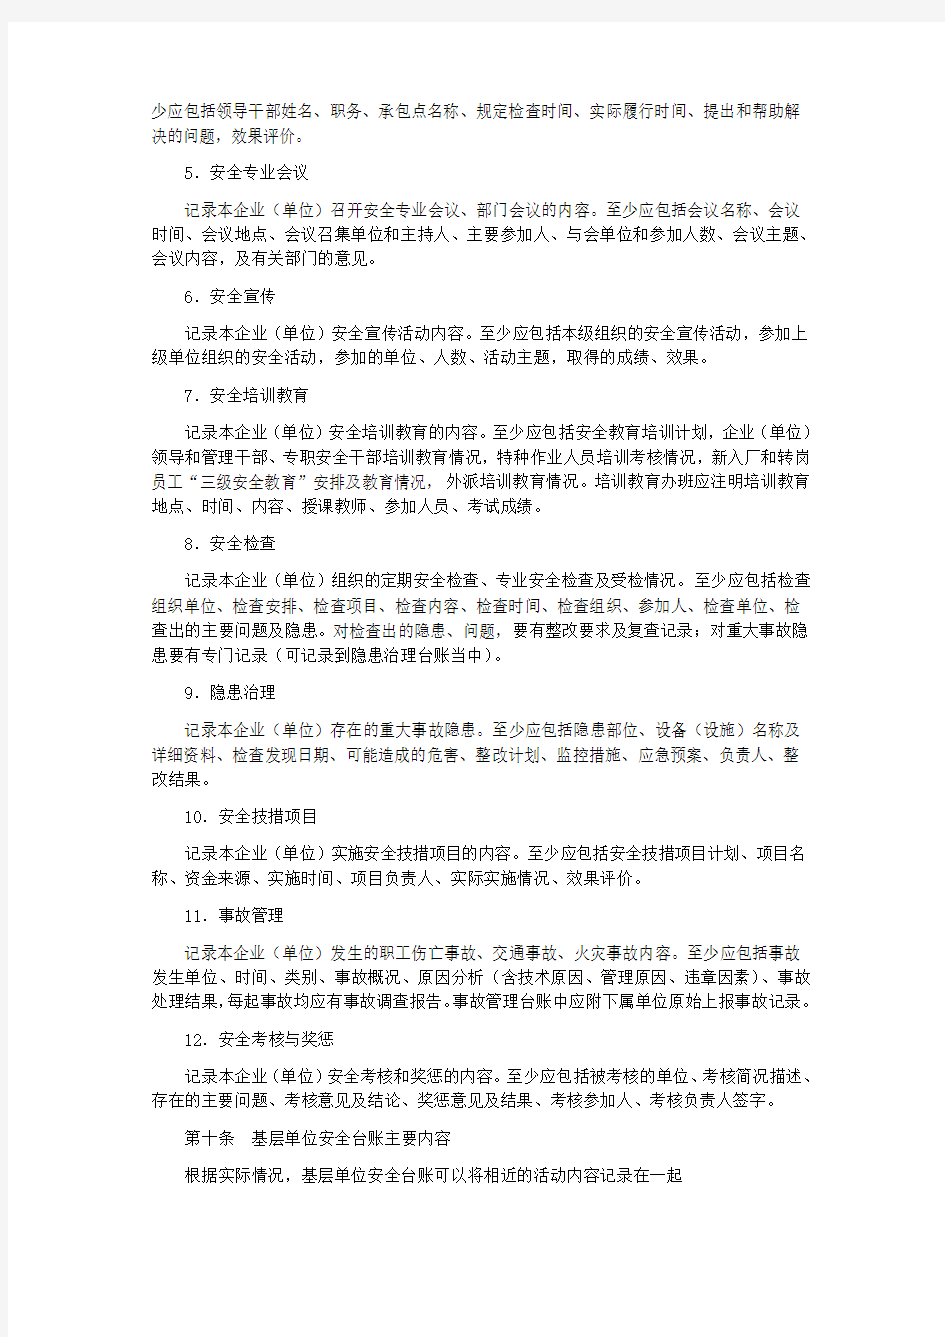 中国石油天然气集团公司安全台账管理办法